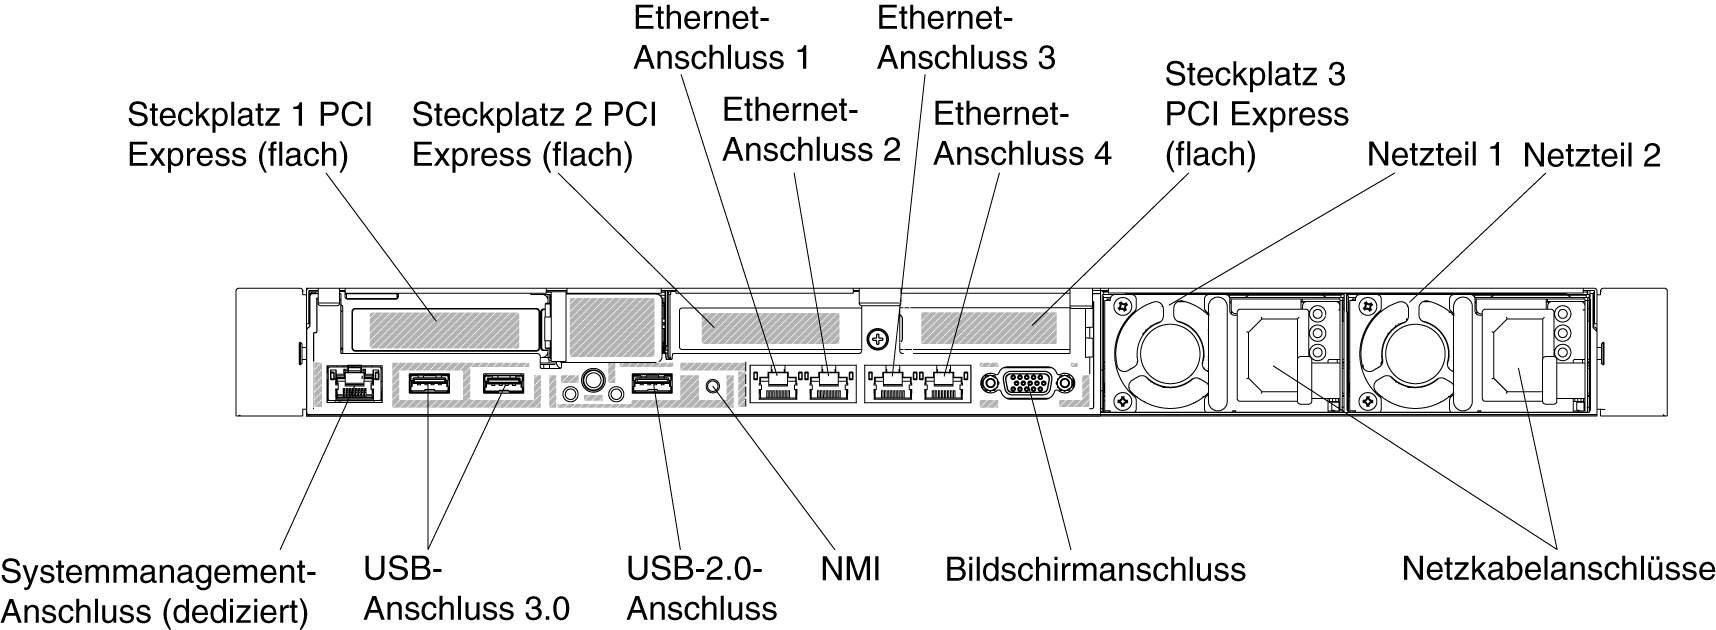 Abbildung mit Anschlüssen an der Rückseite. Hier sind drei flache PCI-Adapterkartenbaugruppen installiert.